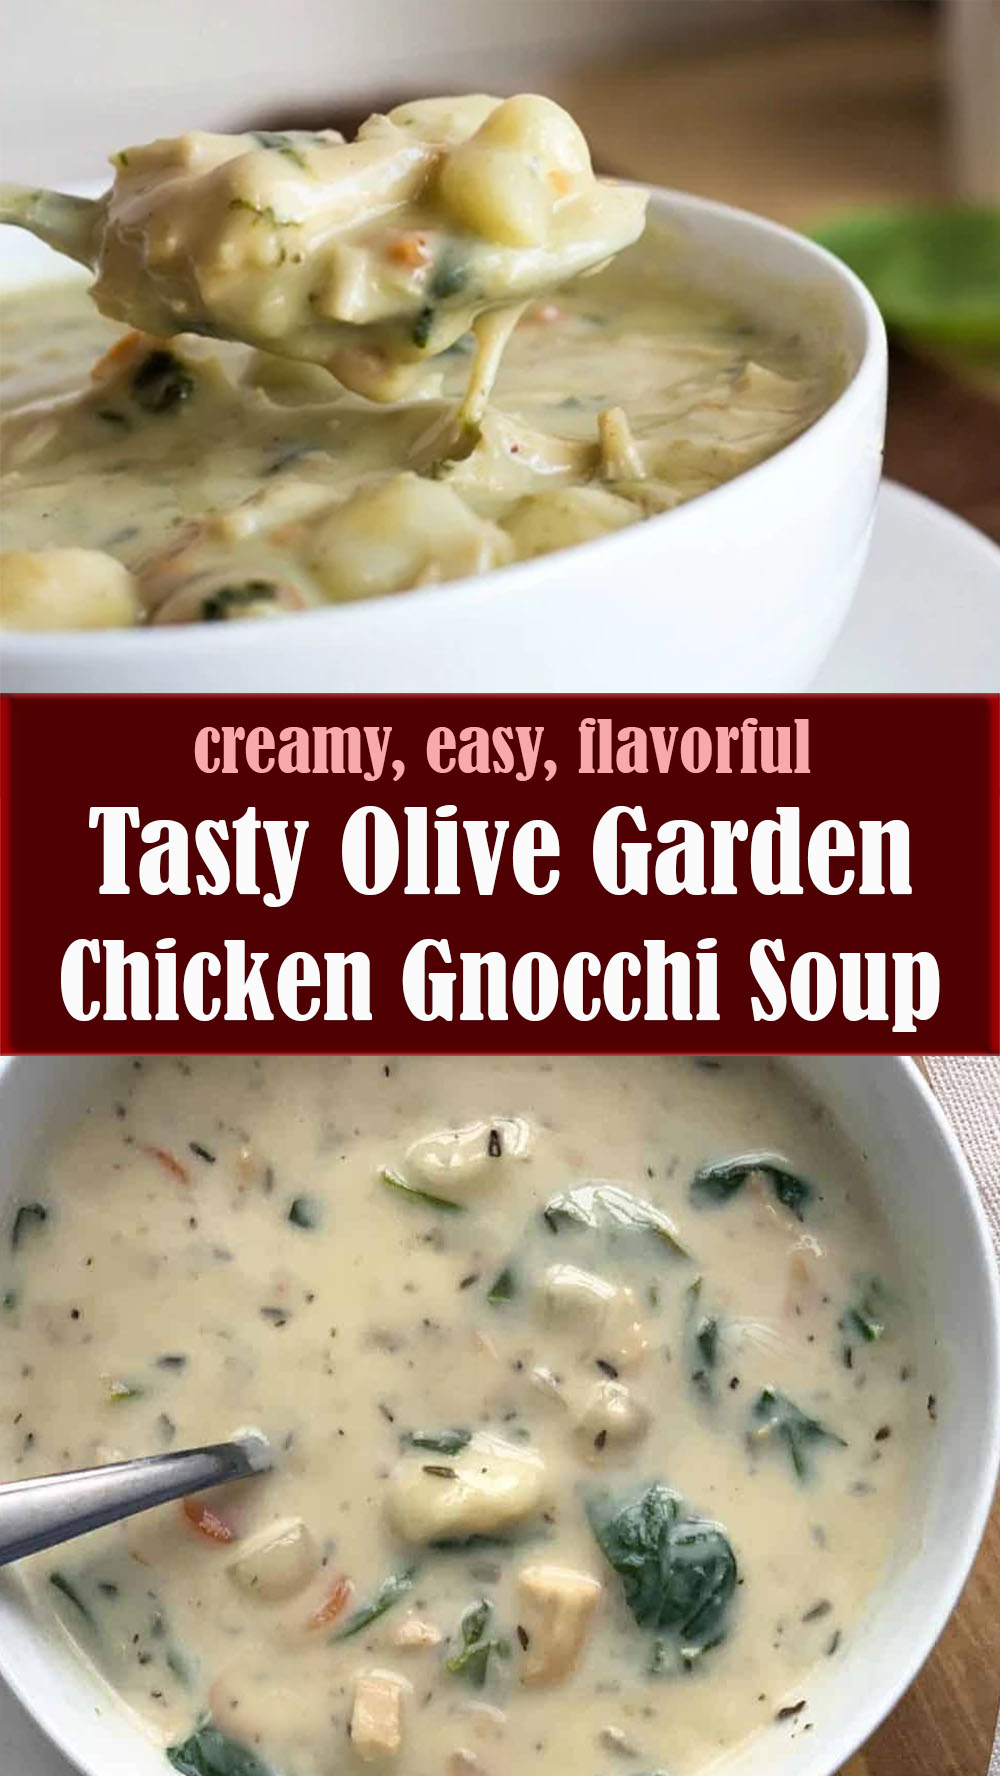 Tasty Olive Garden Chicken Gnocchi Soup